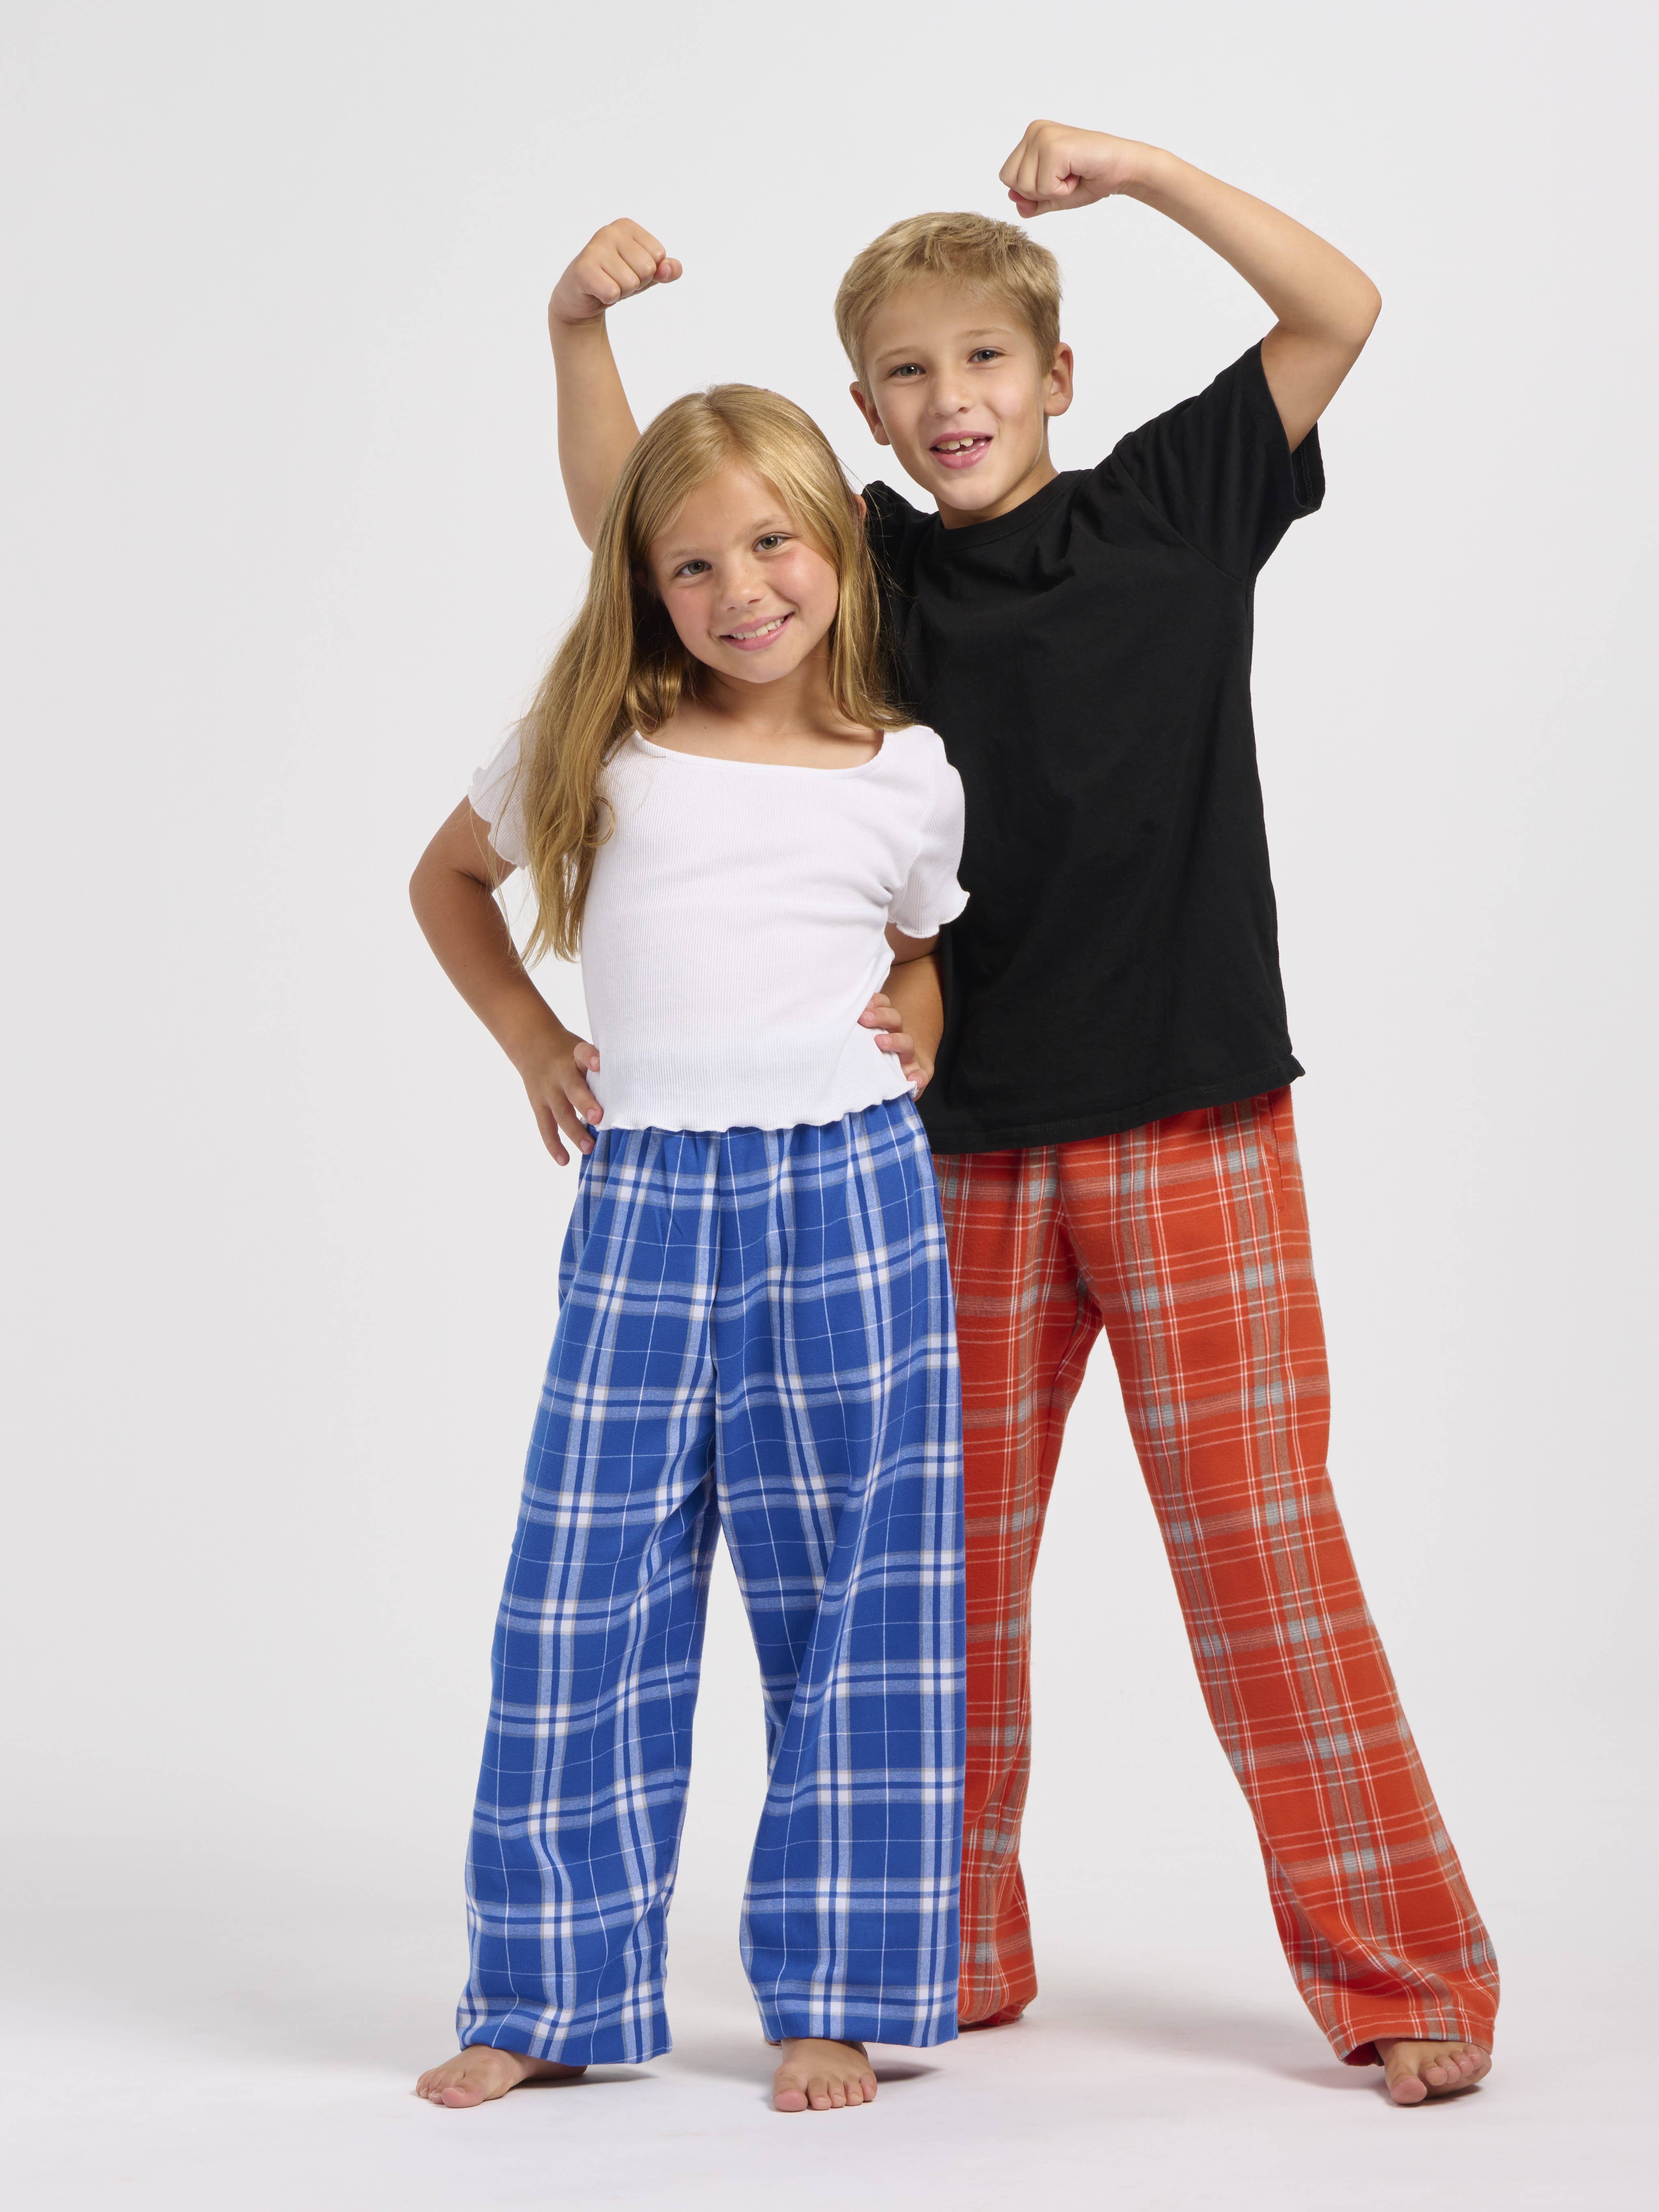 Bulk Men's Pajama Bottoms - Wholesale Flannel Pajamas, Plaid Pajamas